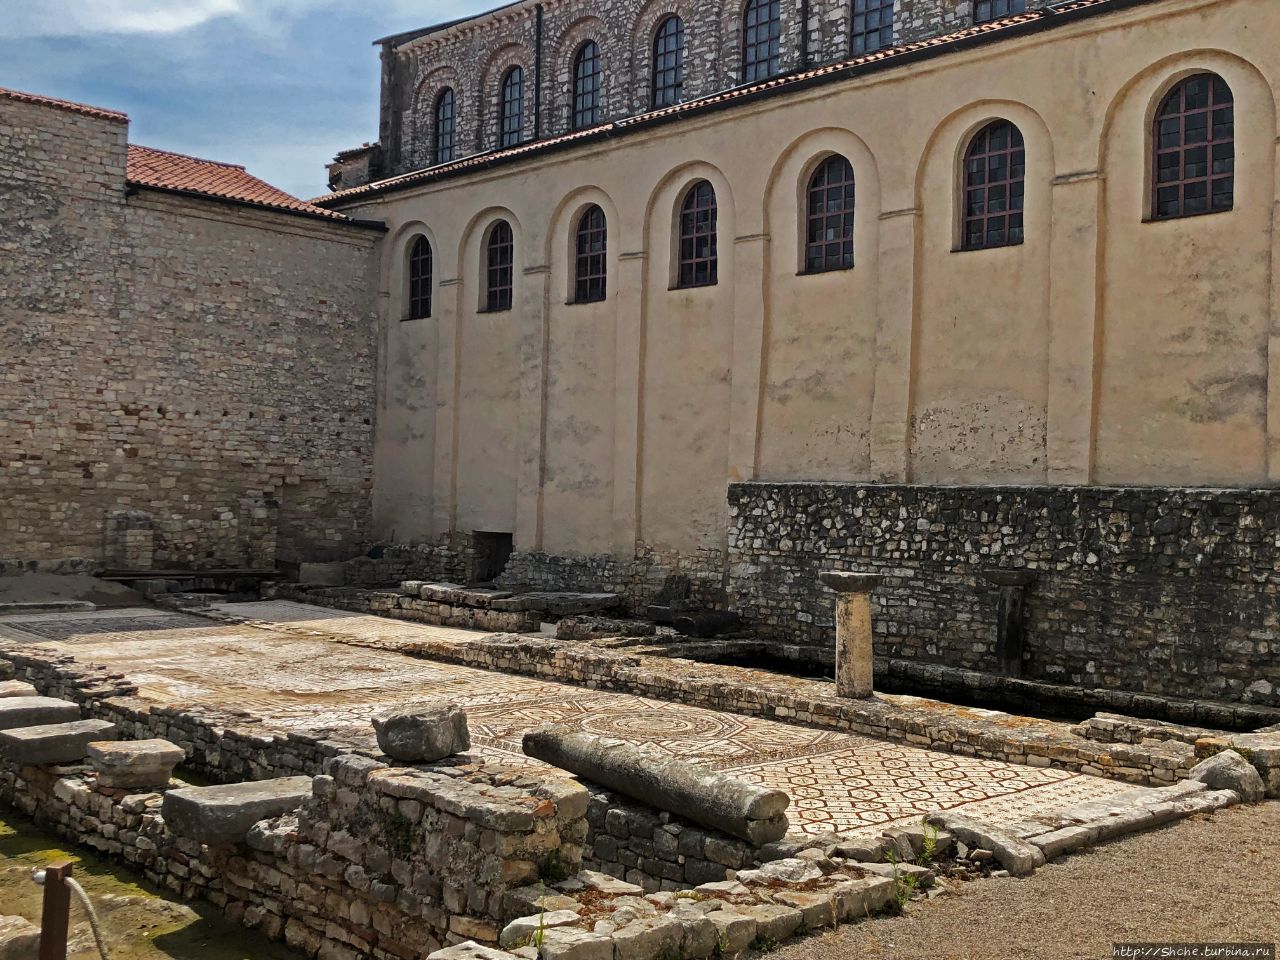 Евфразиева базилика Пореч, Хорватия